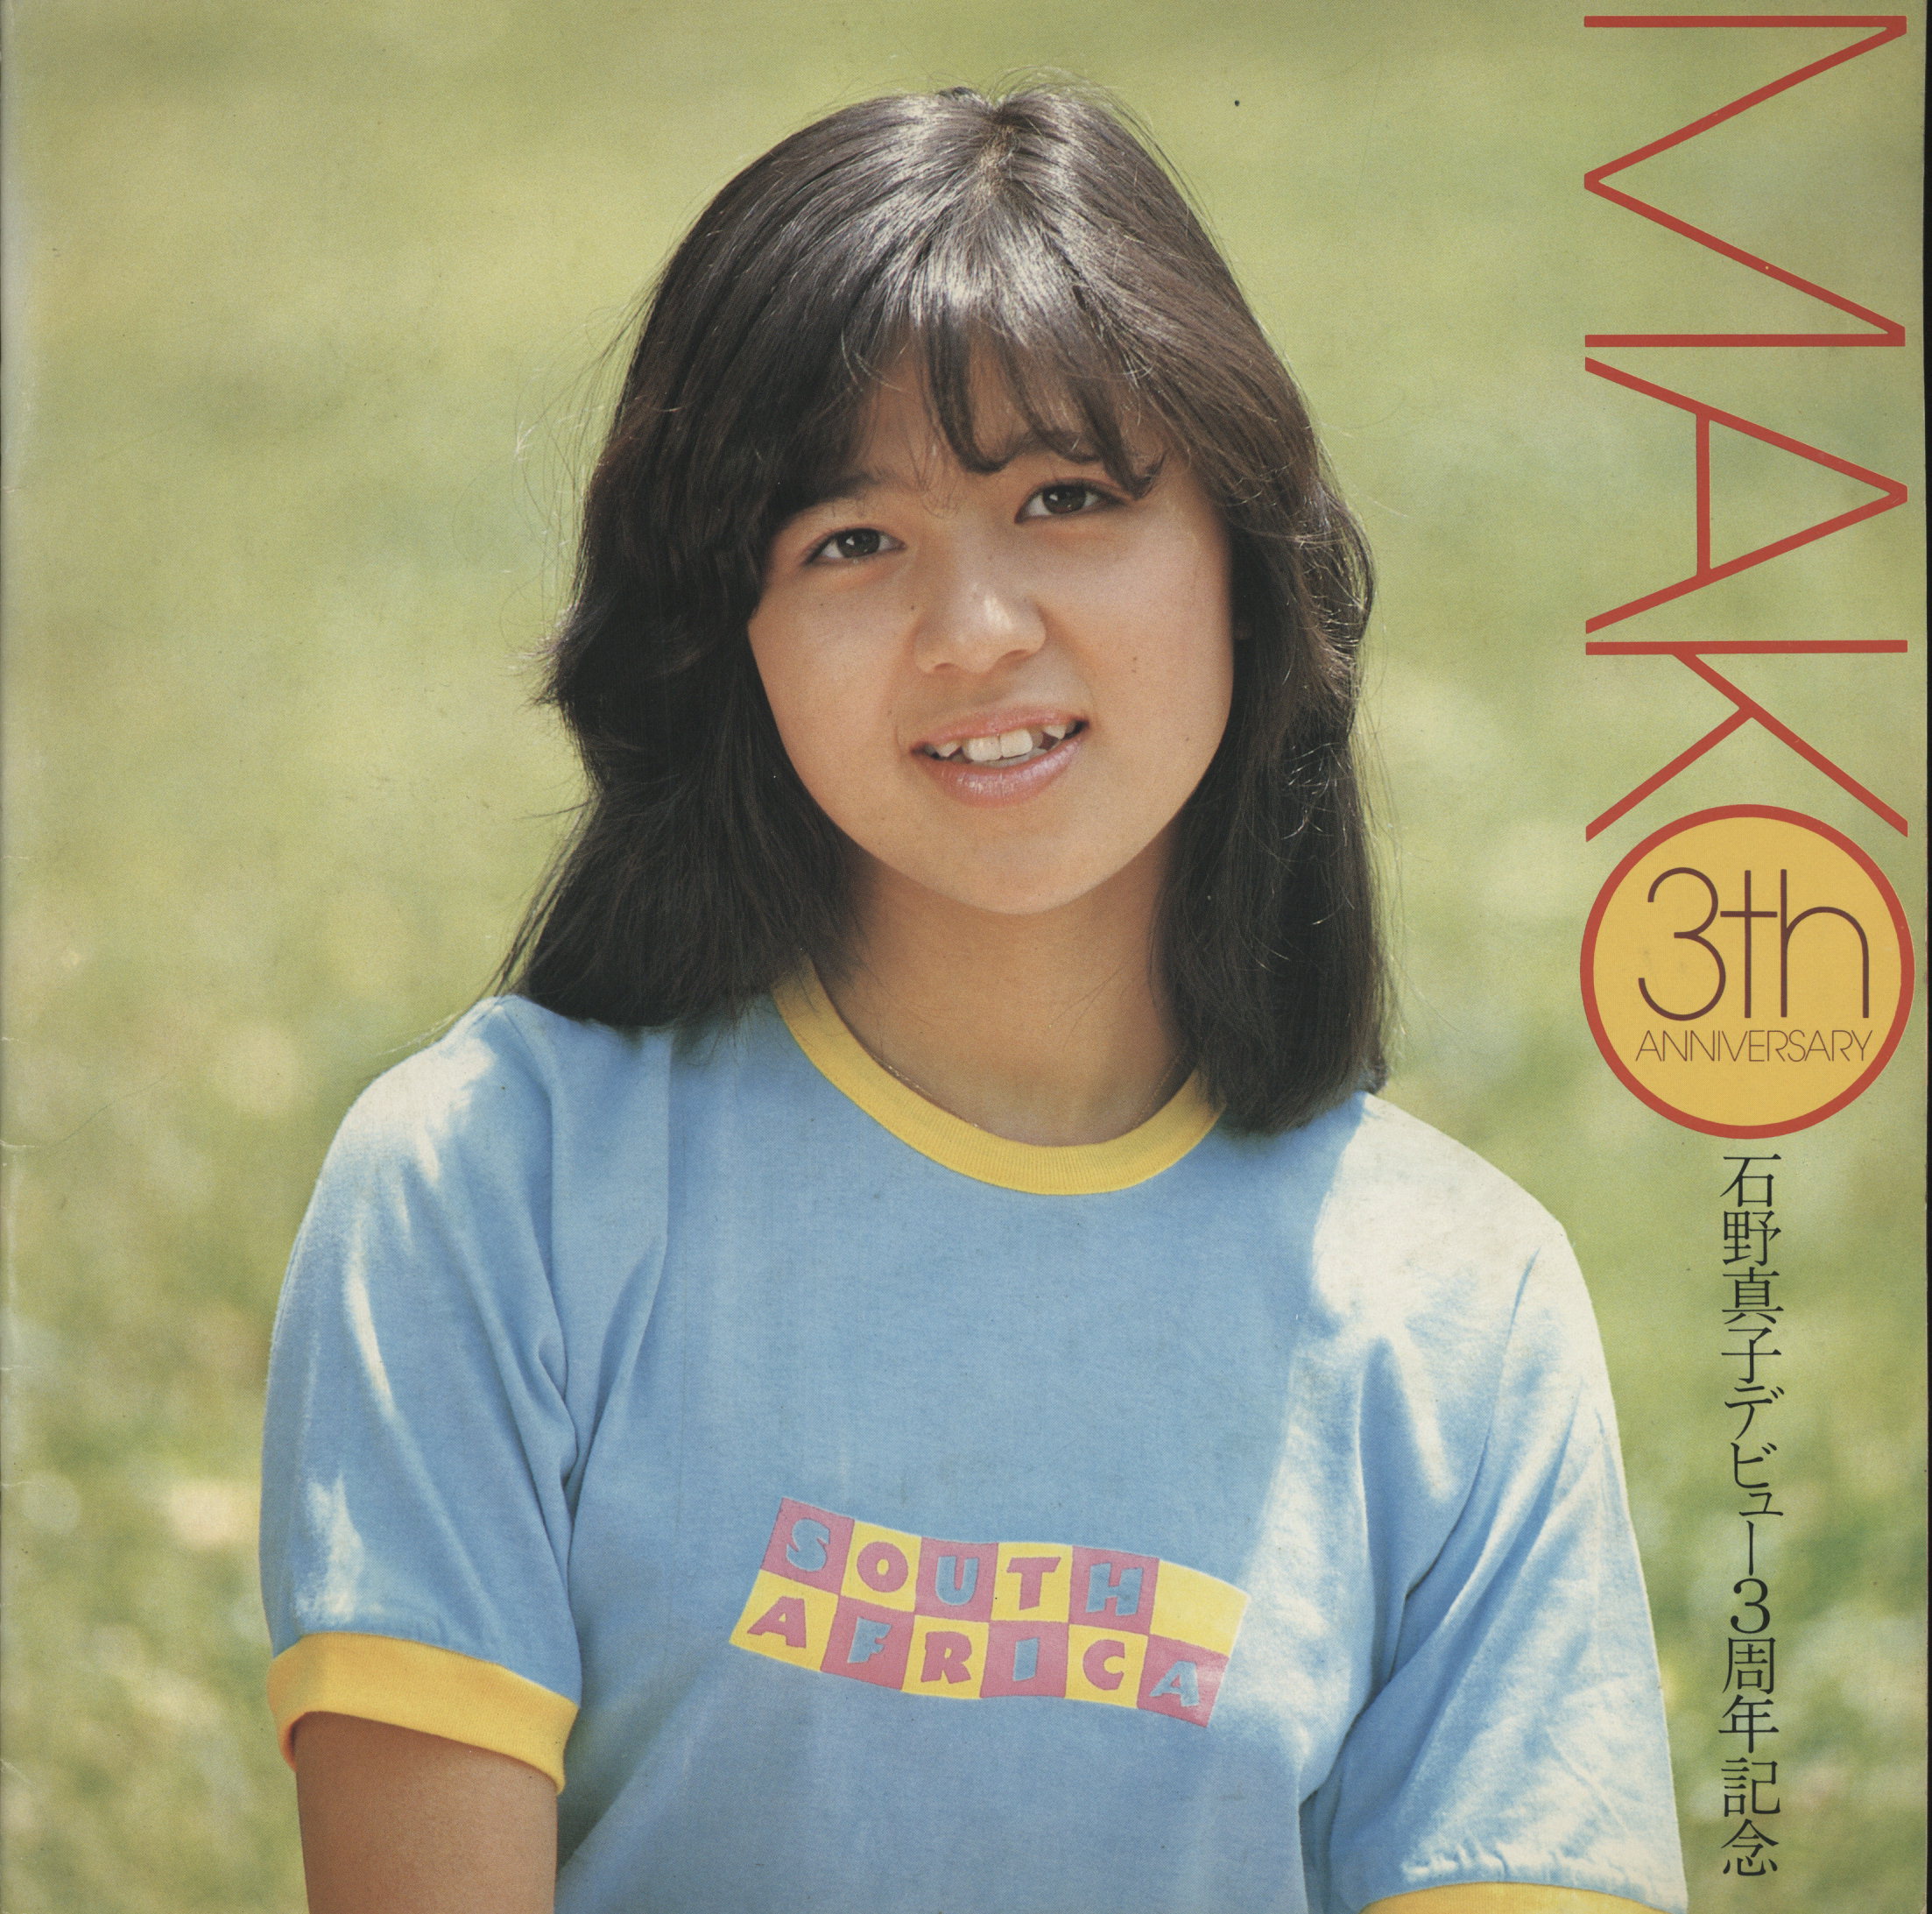 パンフレット 石野真子 Mako 3th Anniversary 石野真子デビュー3周年記念 まんだらけ Mandarake